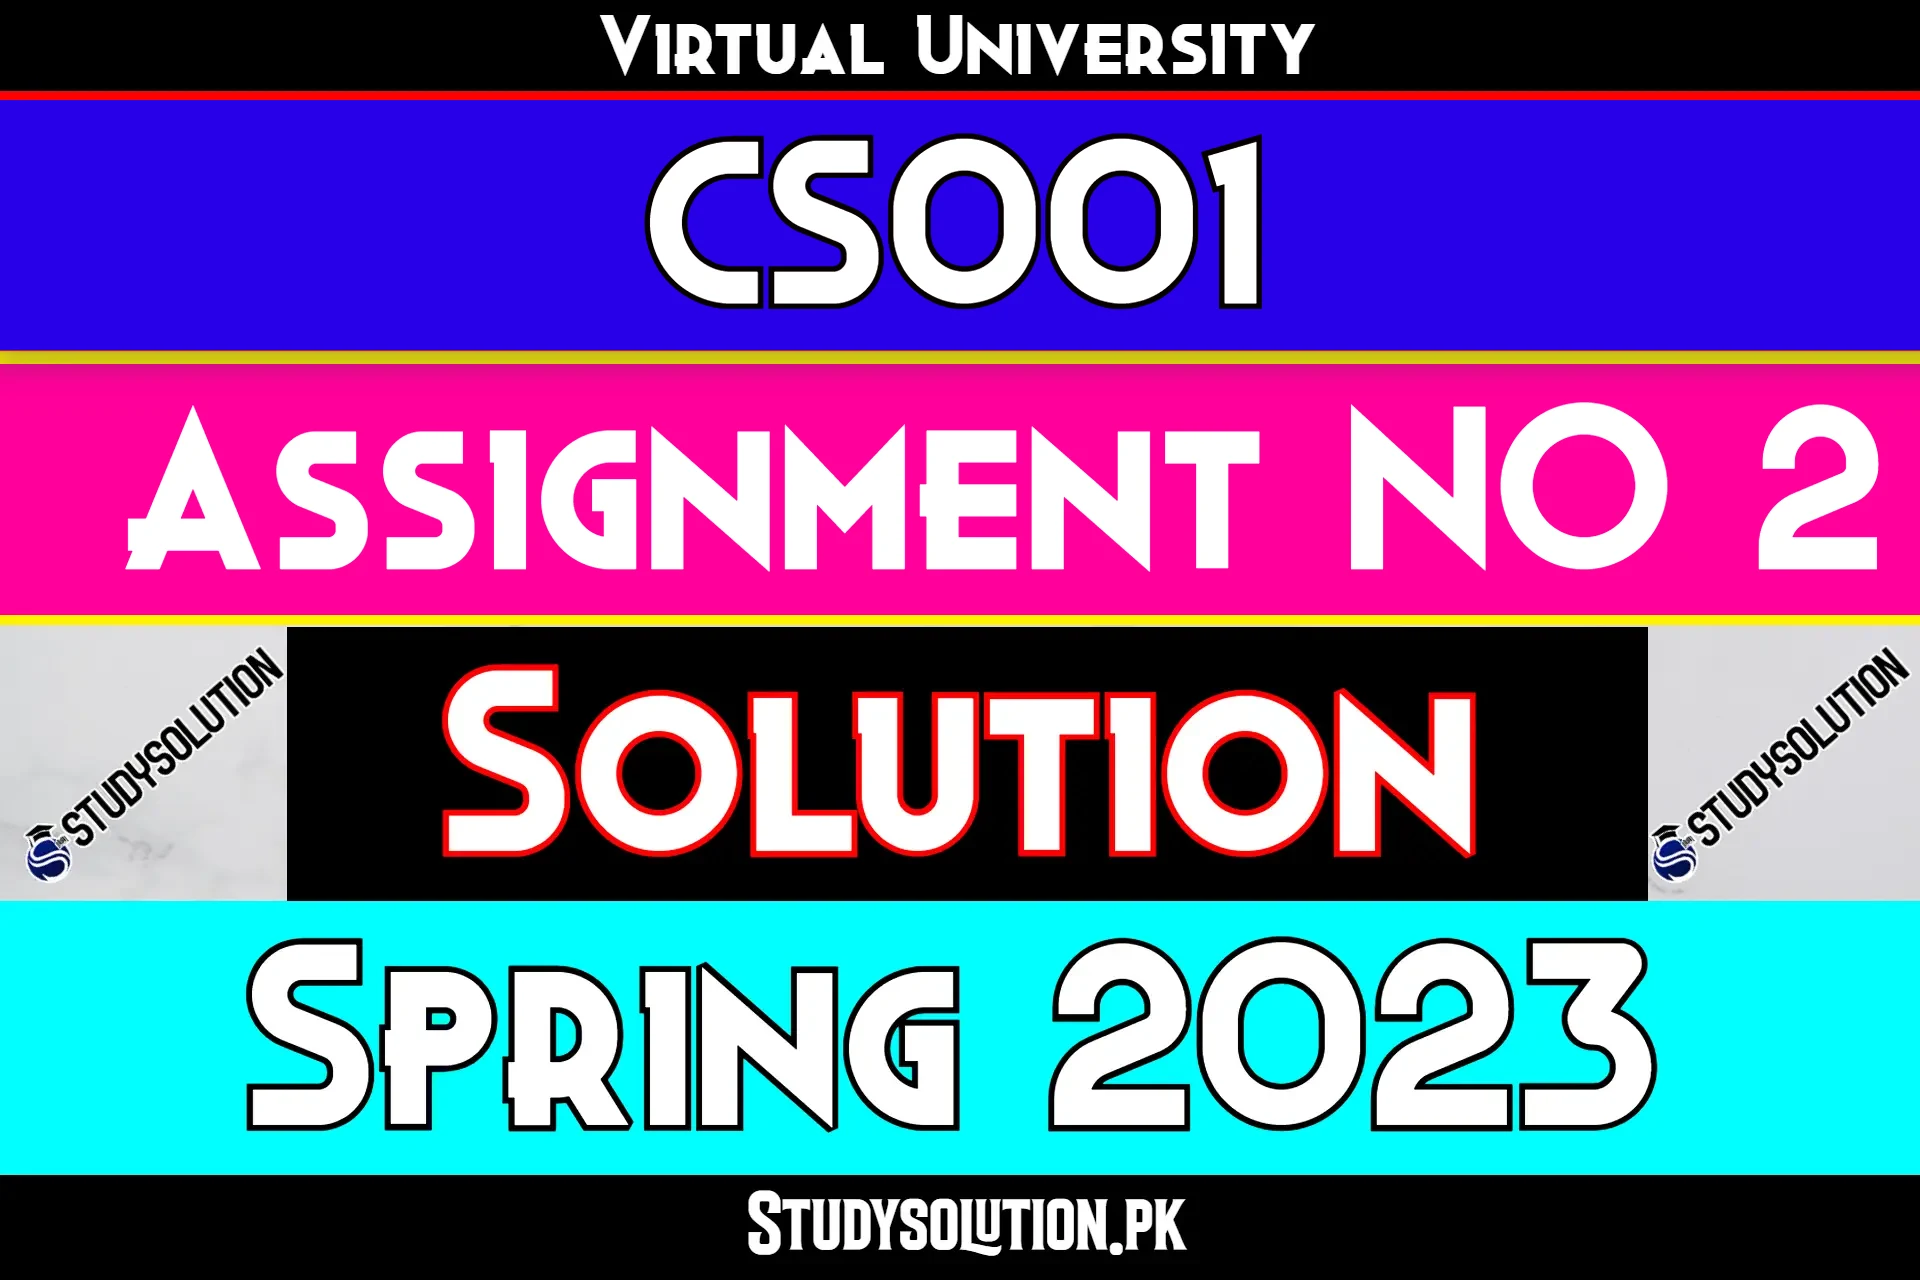 CS001 Assignment No 2 Solution Spring 2023